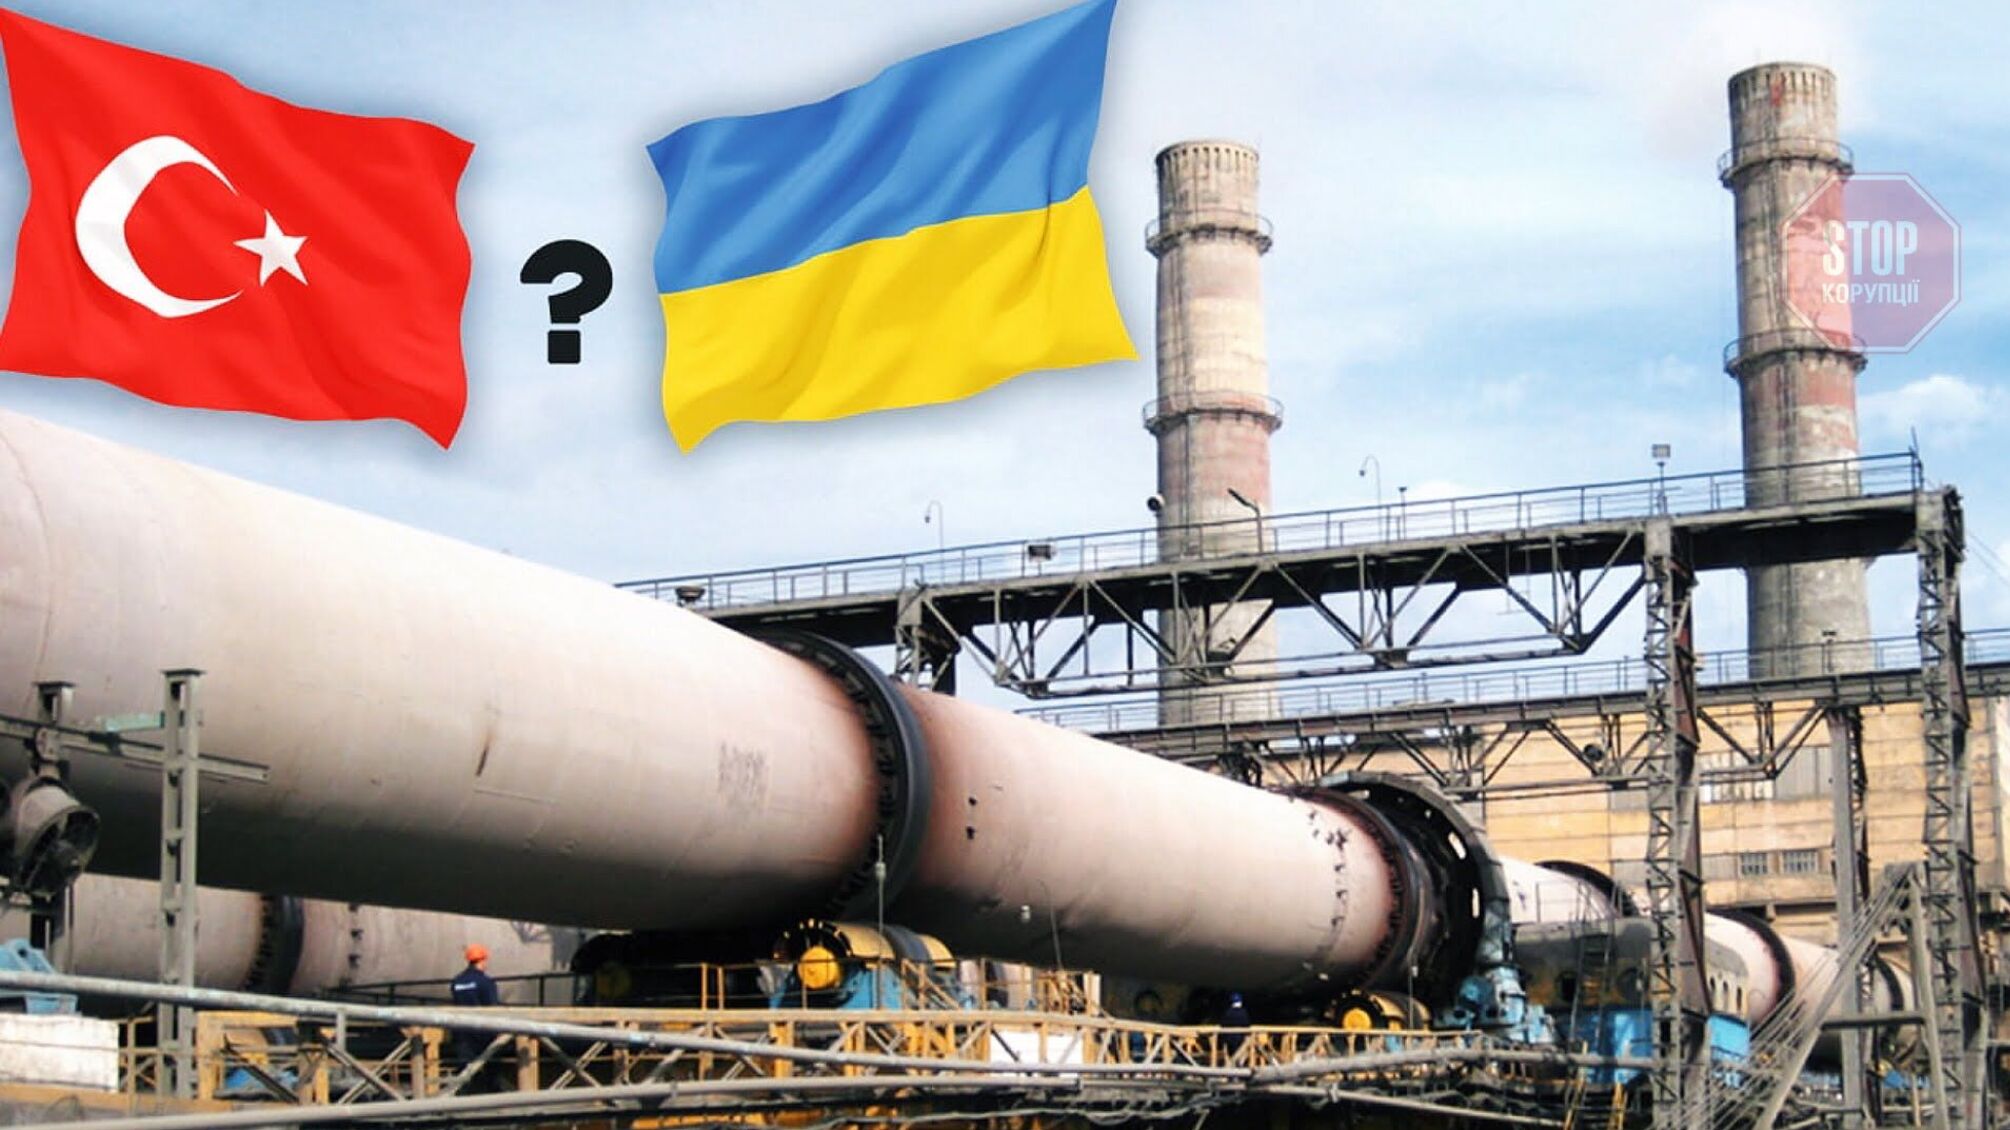 Українські цементні заводи можуть закритися через надмірний турецький імпорт, – експерти